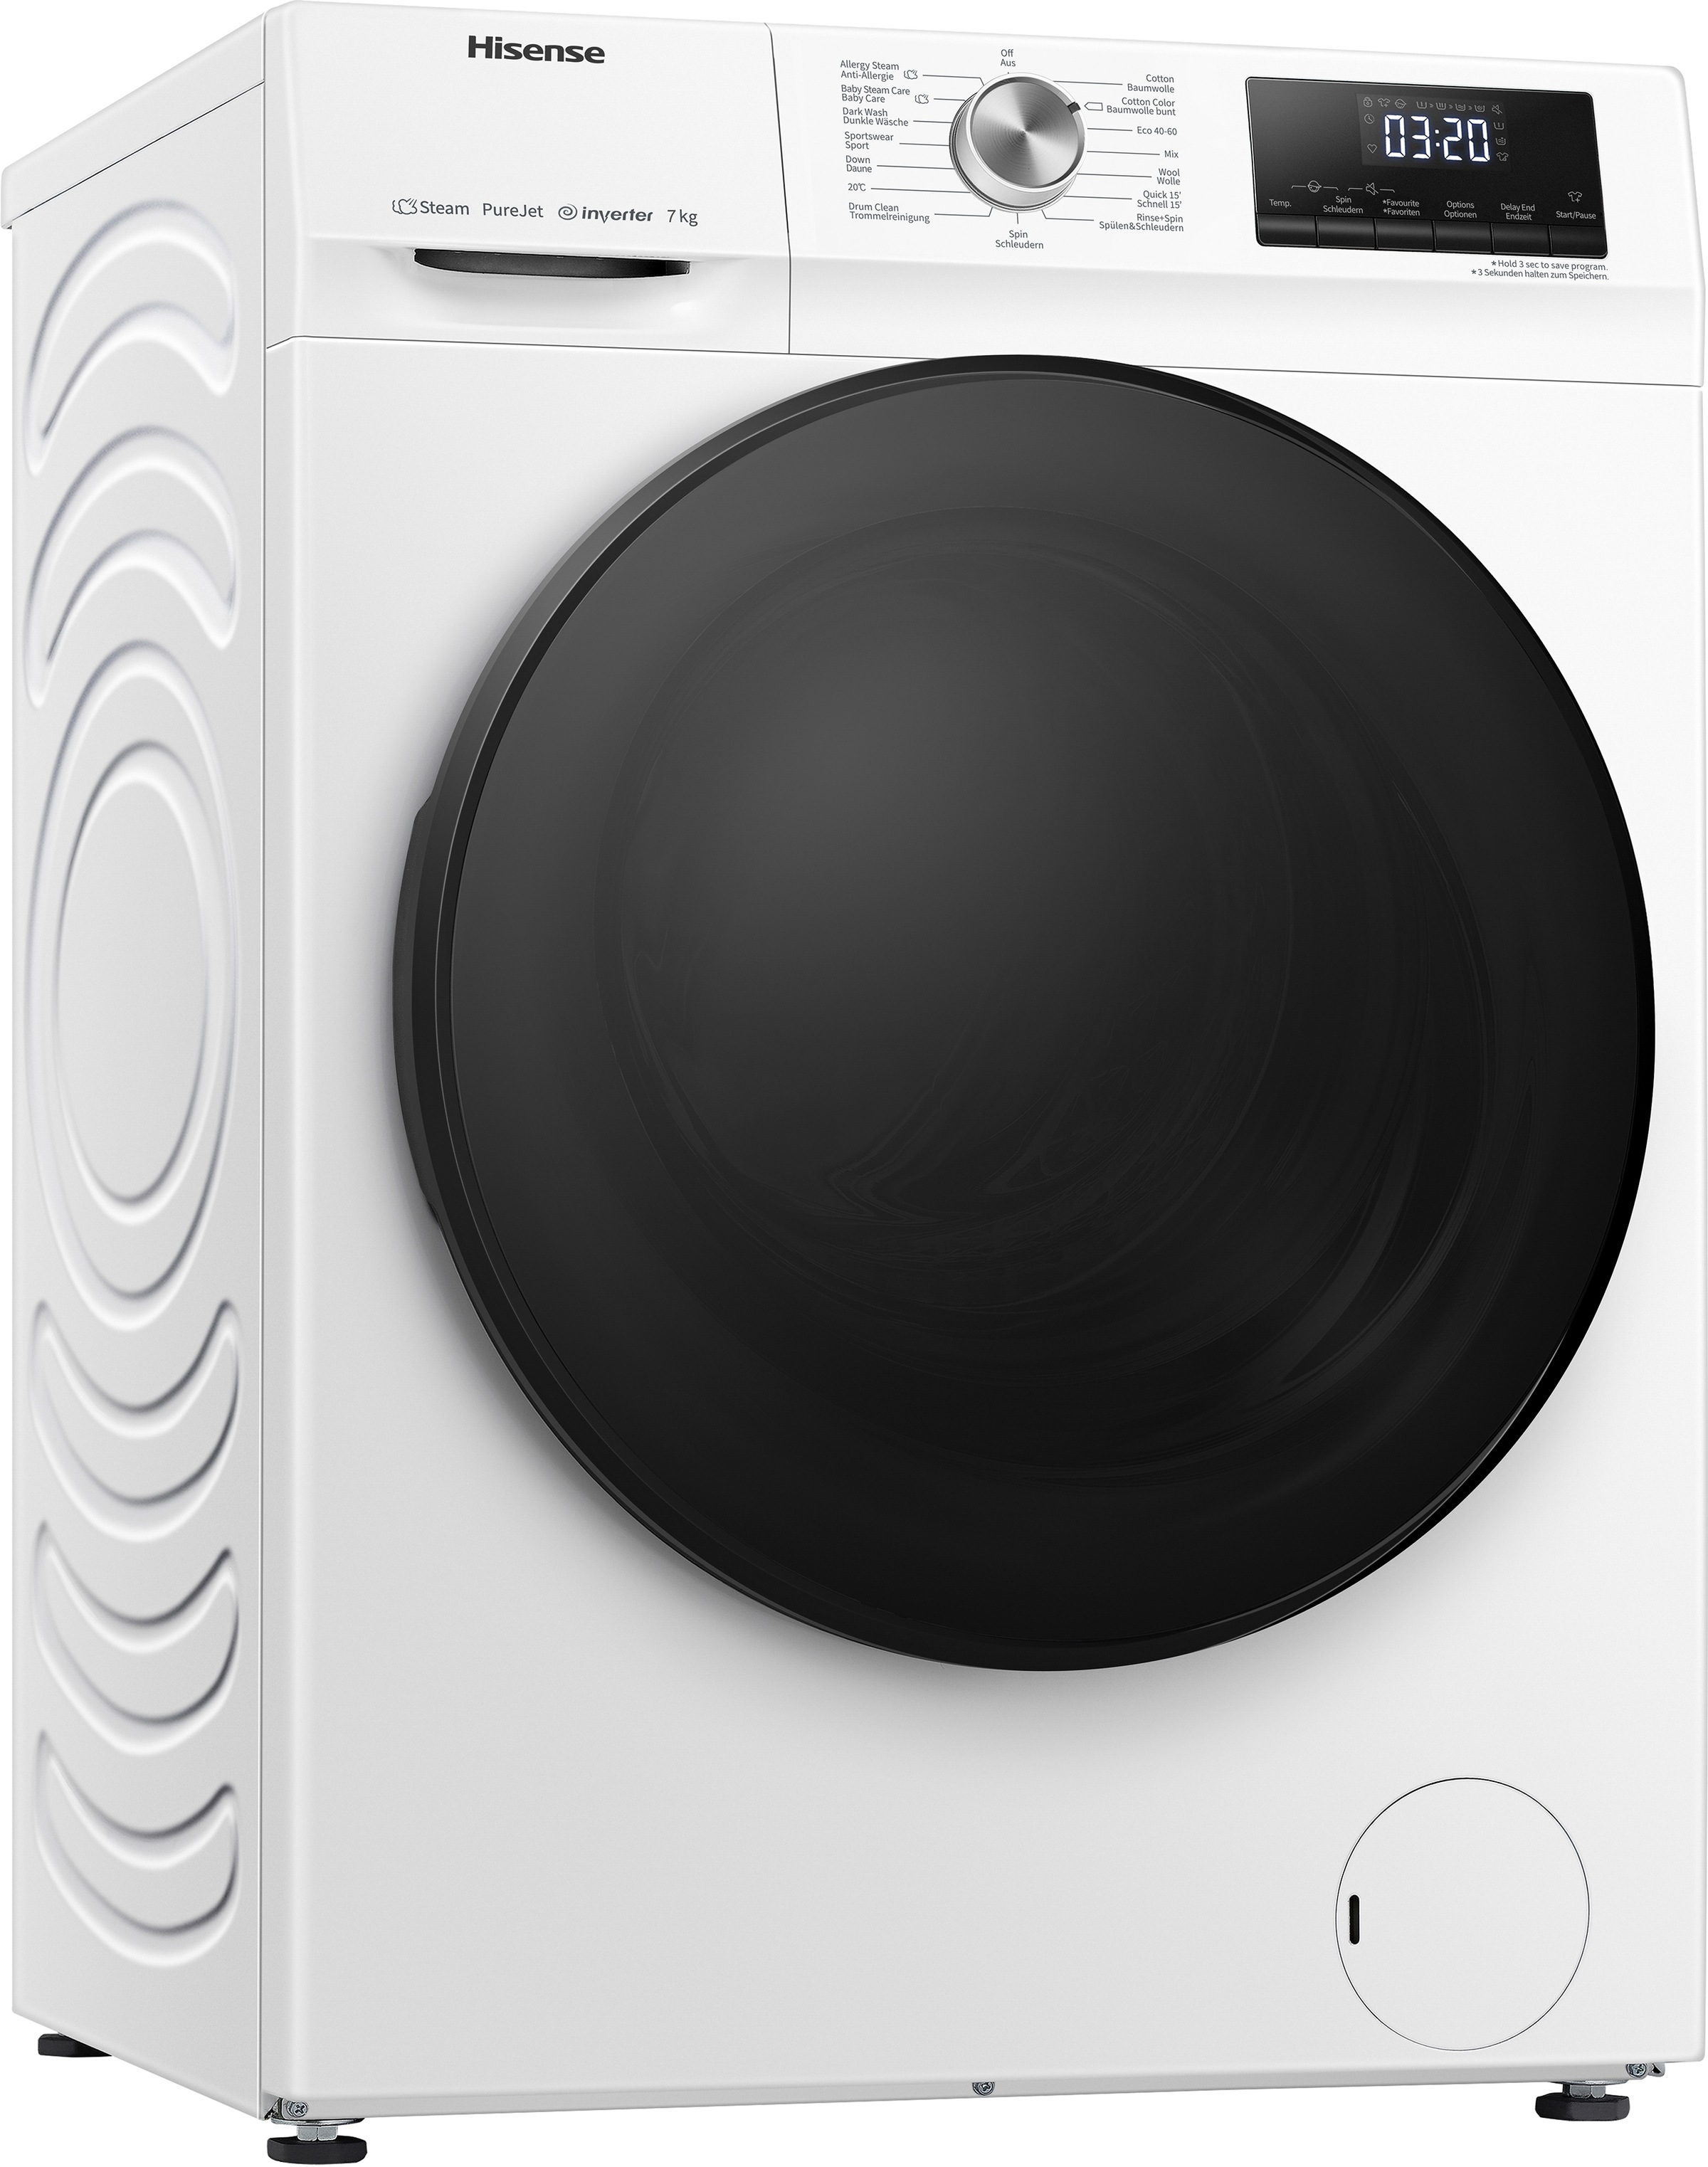 Hisense Waschmaschine, WFQA7014EVJM, Shop 1400 WFQA7014EVJM, im U/min kg, jetzt Online 7,0 OTTO